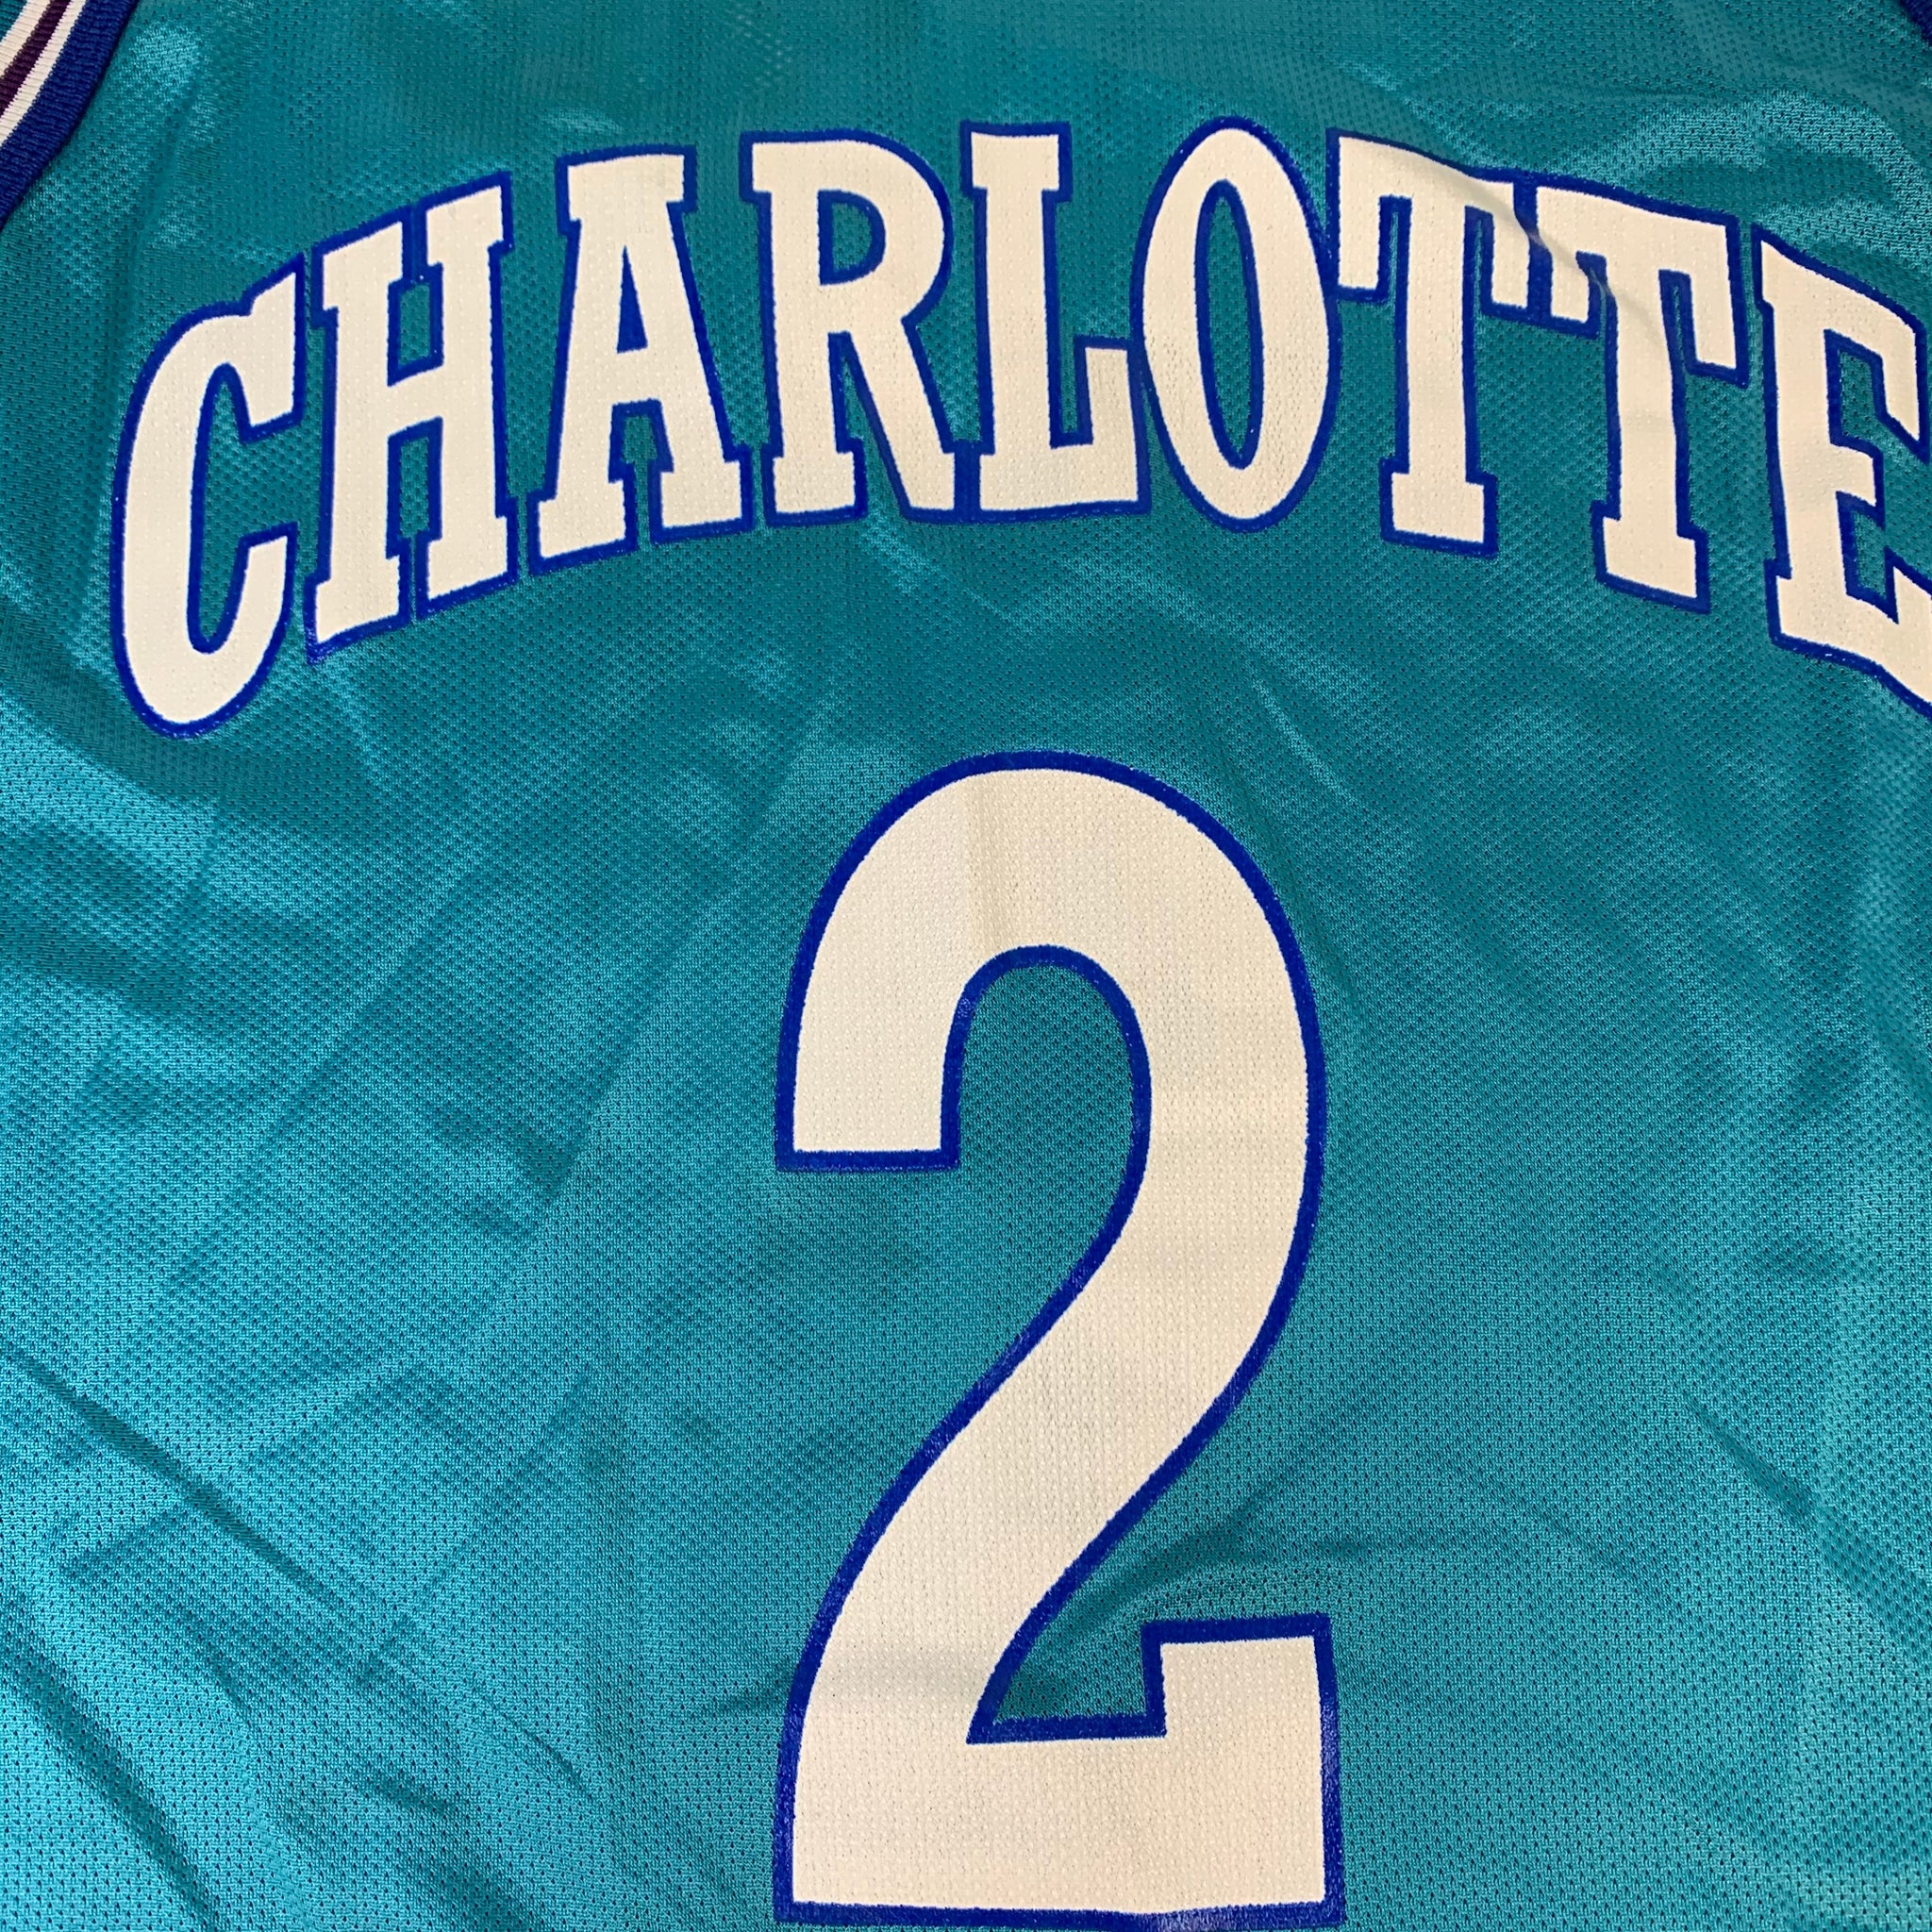 Buy Official Charlotte Hornets Jerseys & Merchandise Australia